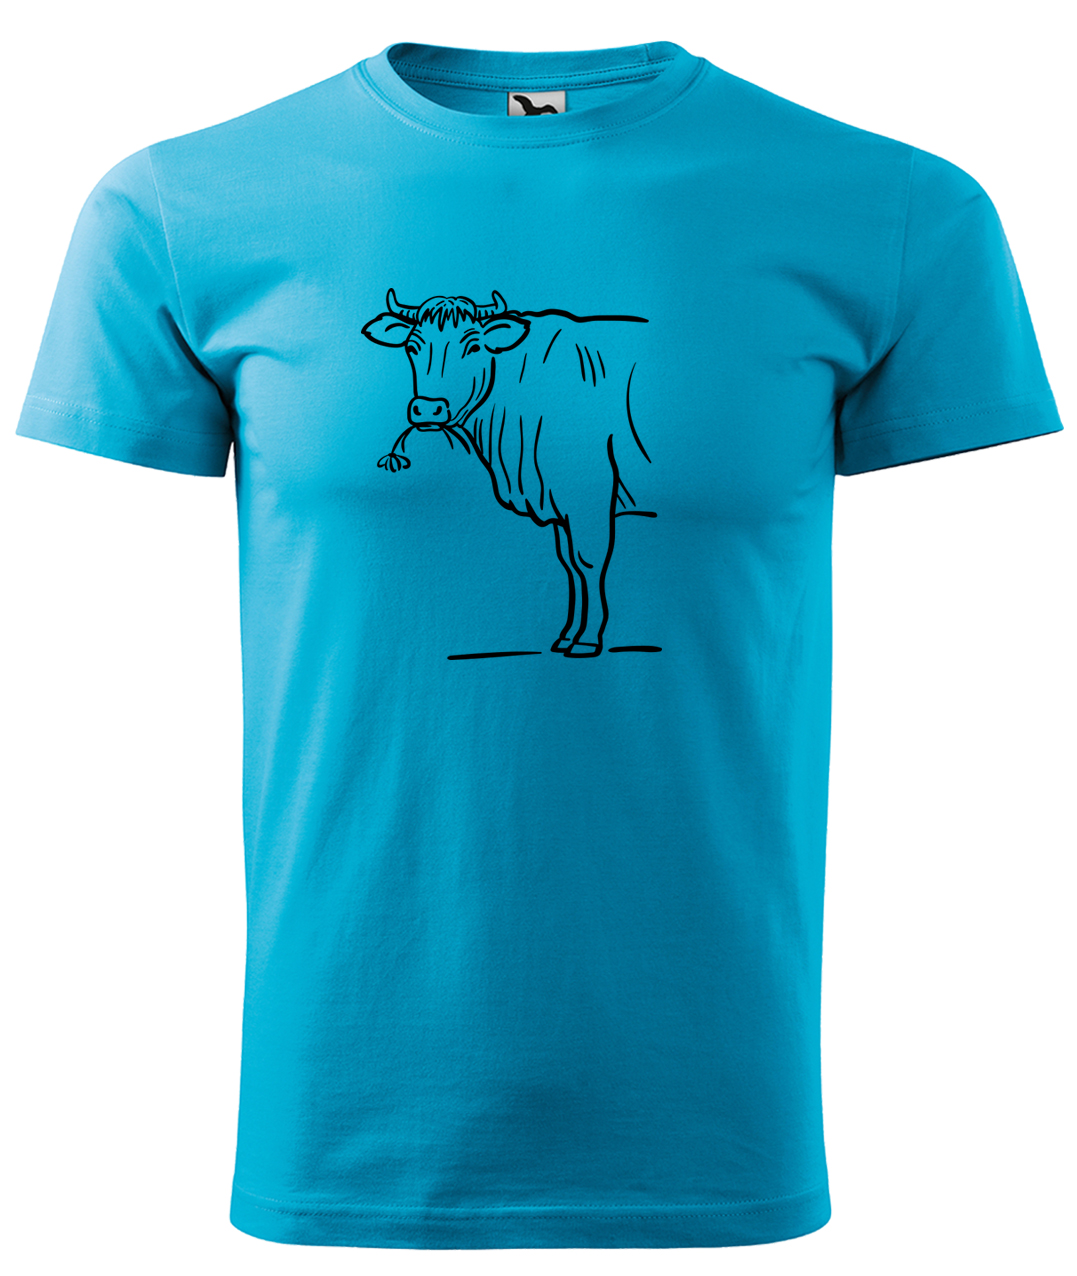 Dětské tričko s krávou - Býk Velikost: 10 let / 146 cm, Barva: Tyrkysová (44), Délka rukávu: Krátký rukáv